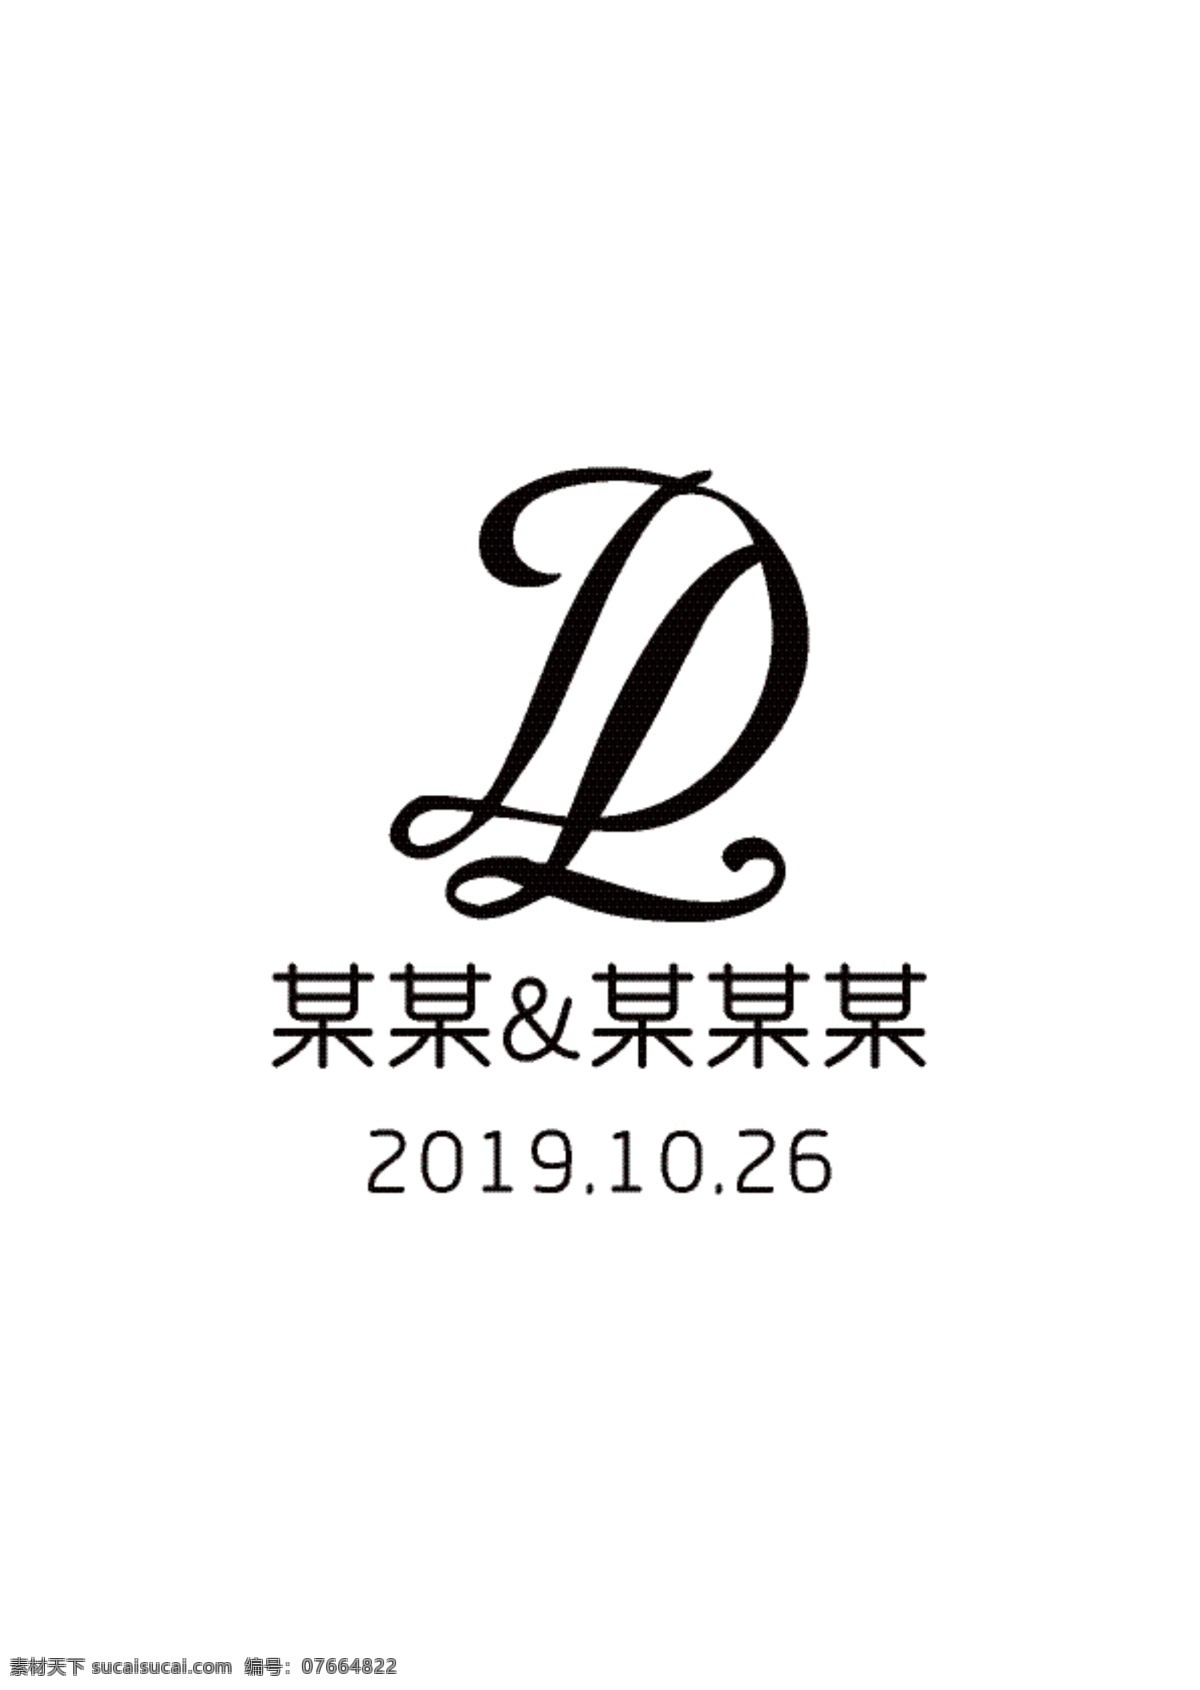 婚礼logo 英文logo 字母ld 爱情 标志 黑色logo 标志图标 其他图标